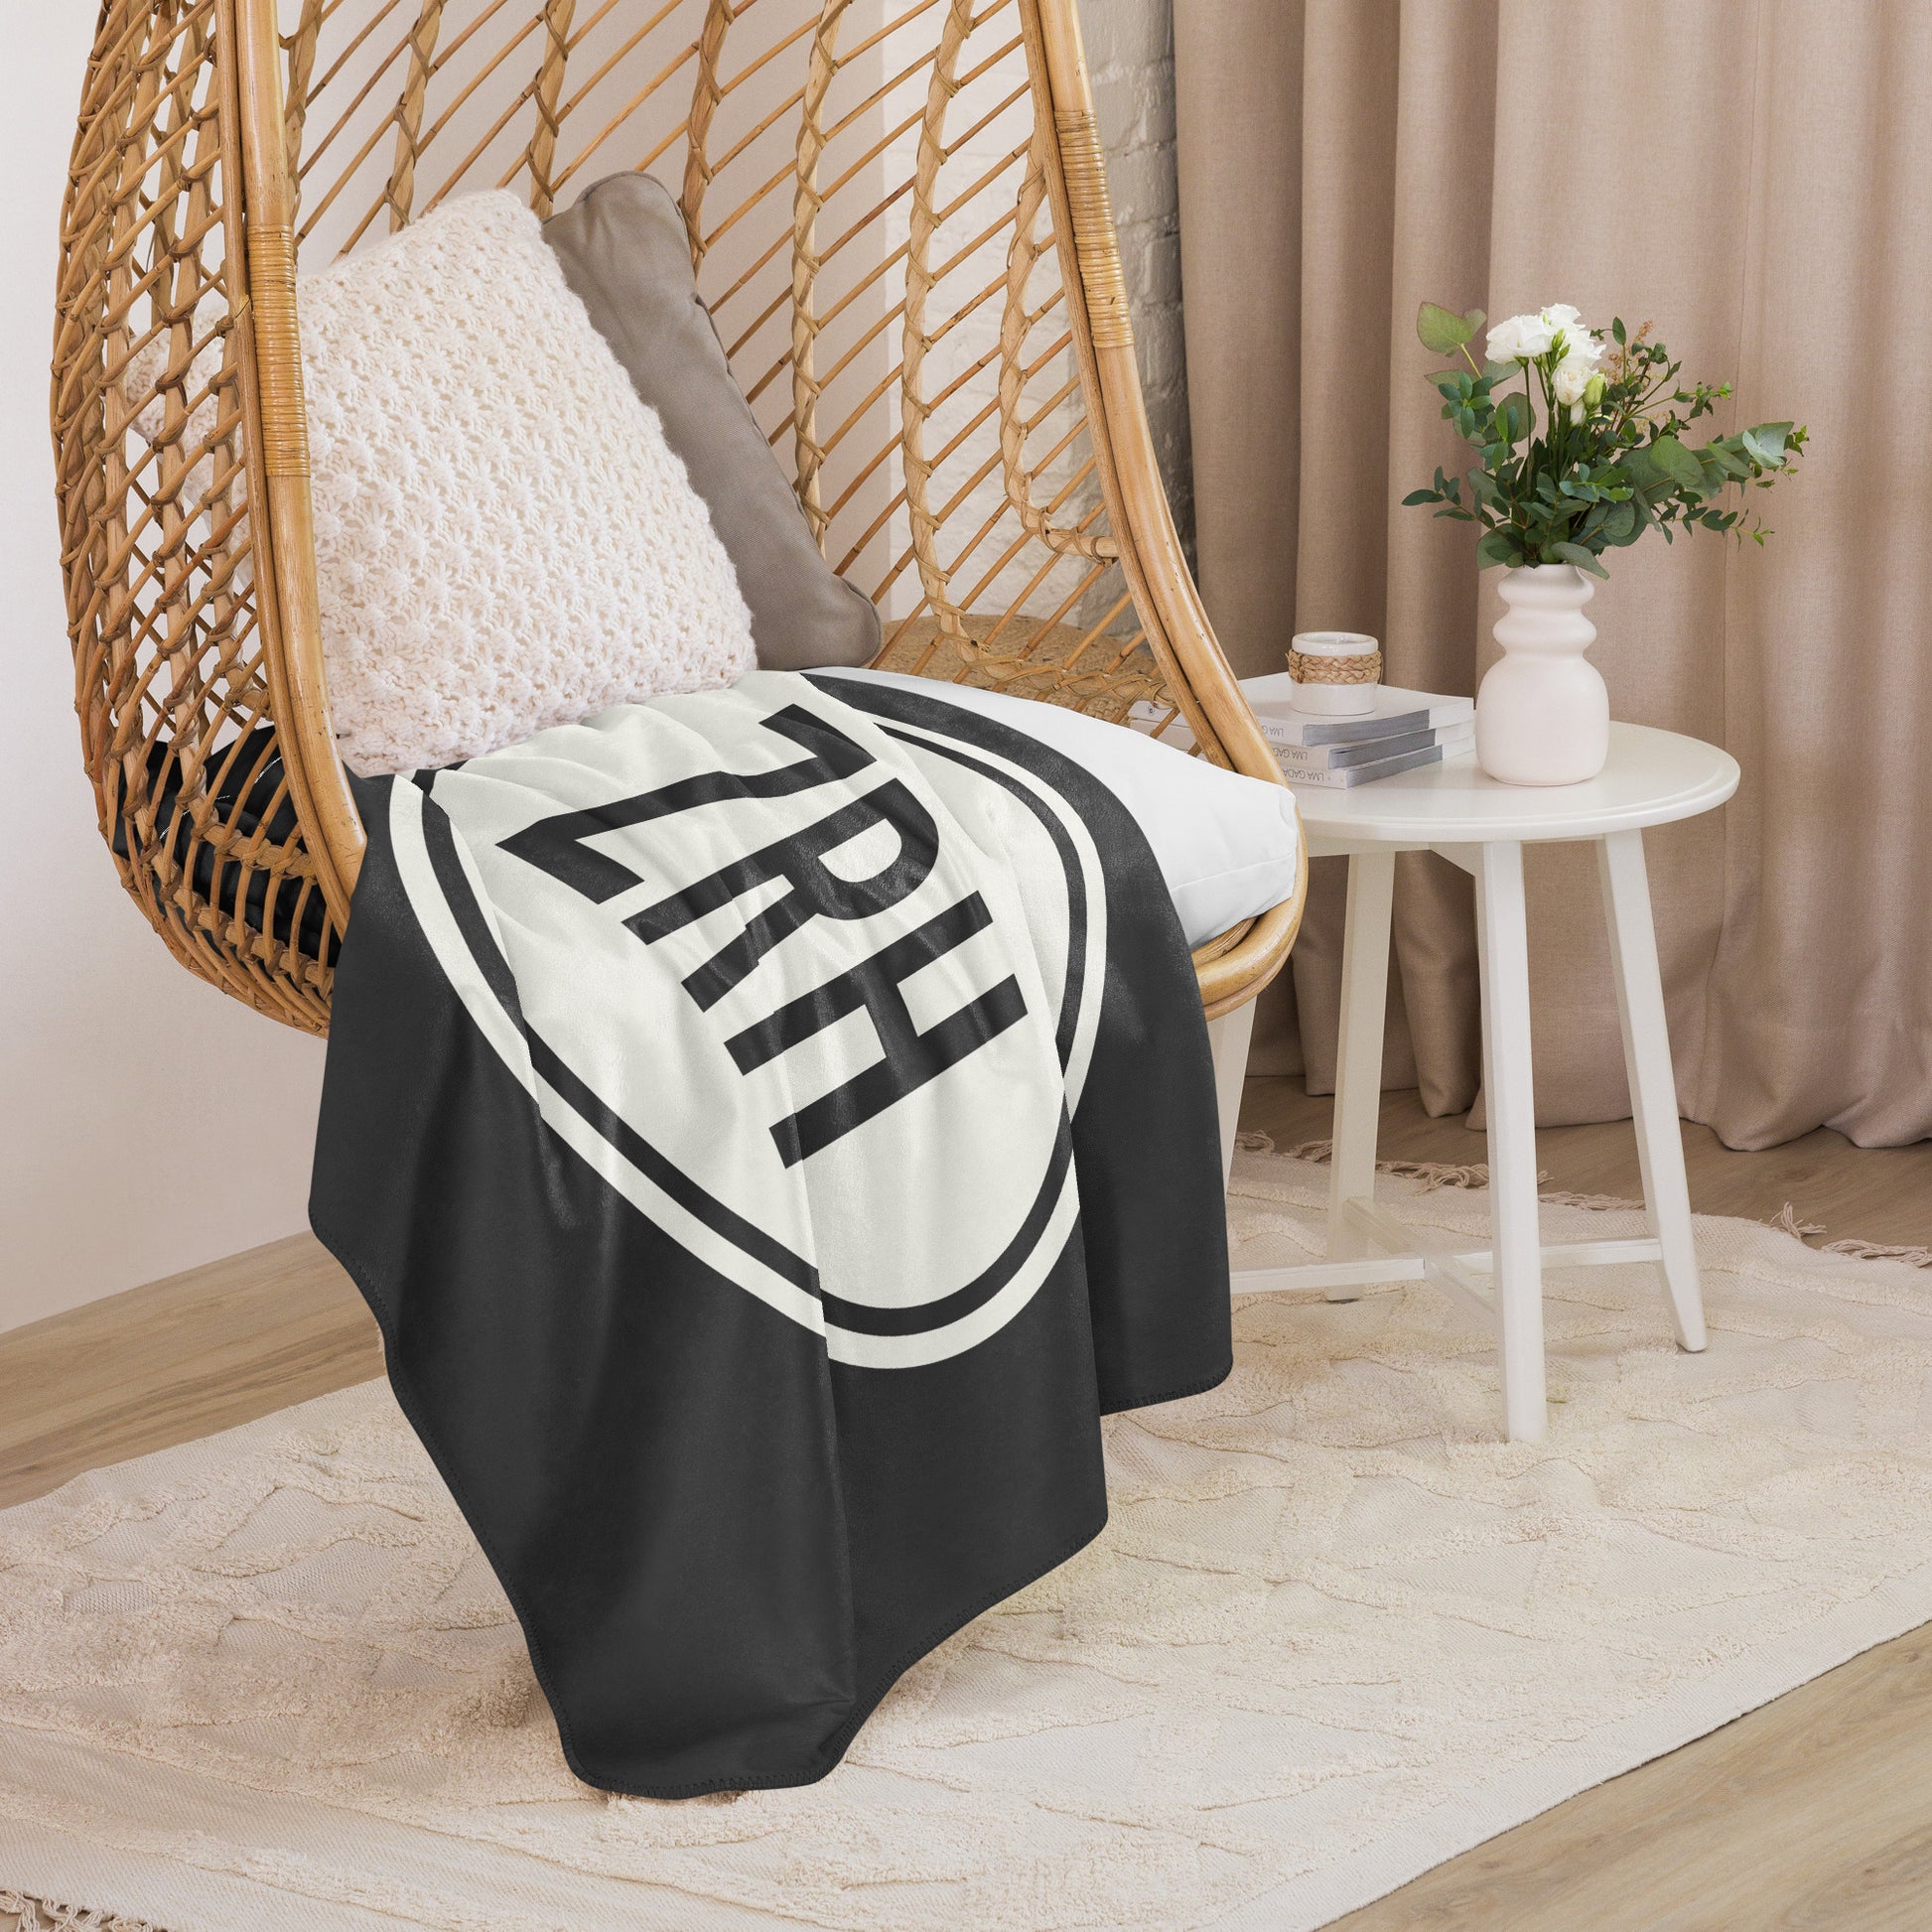 Unique Travel Gift Sherpa Blanket - White Oval • ZRH Zurich • YHM Designs - Image 06